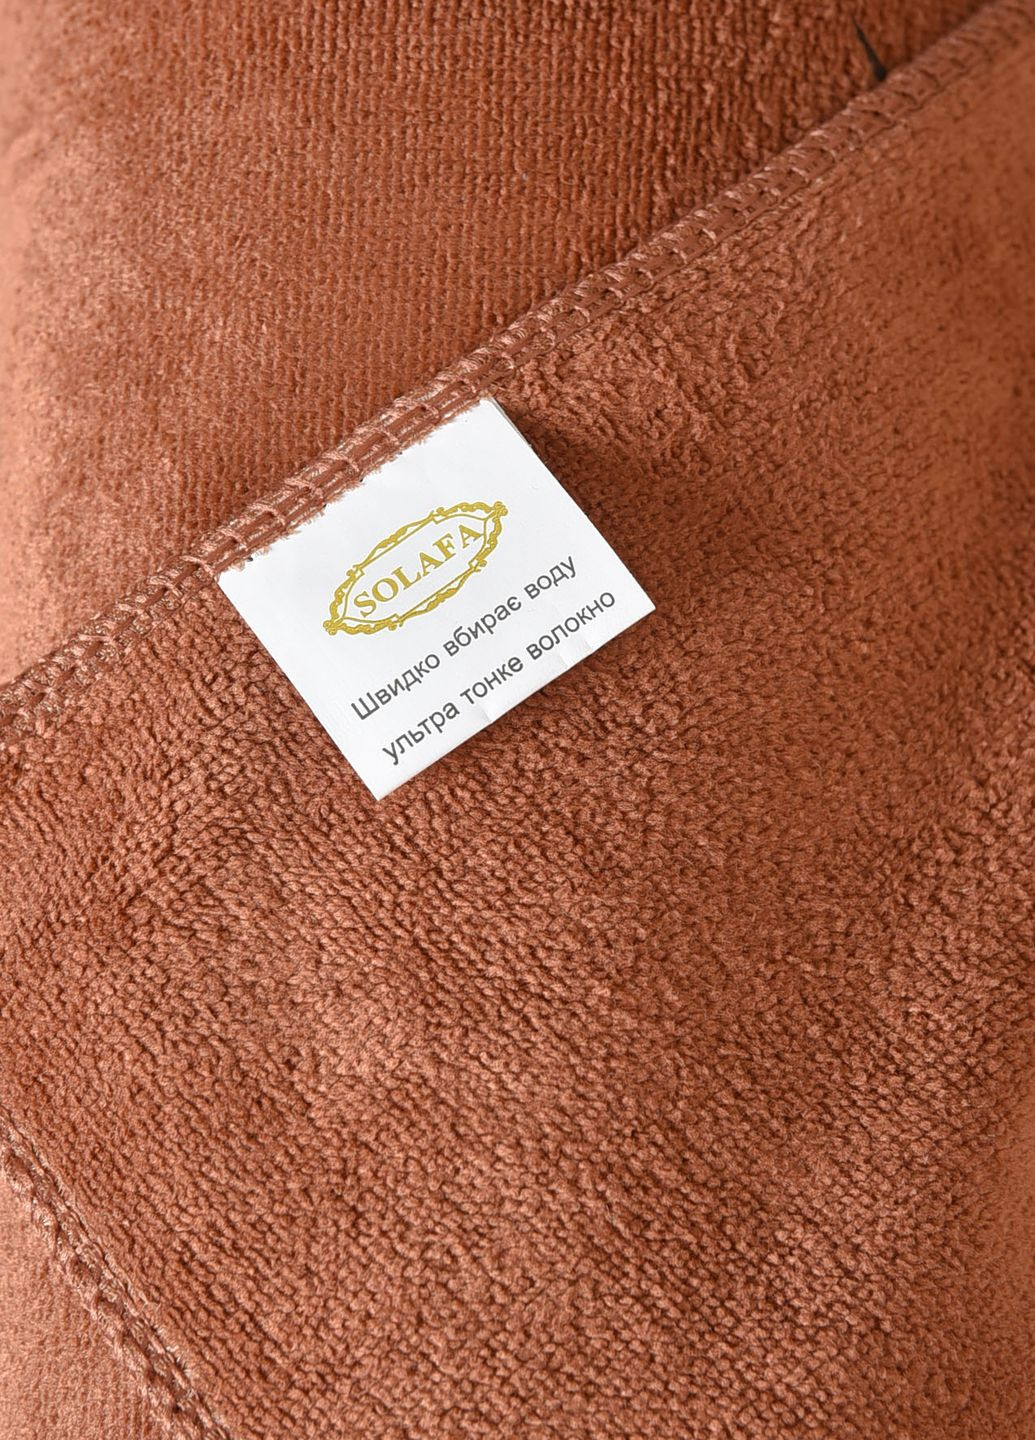 Let's Shop полотенце кухонное микрофибра коричневого цвета однотонный коричневый производство - Китай